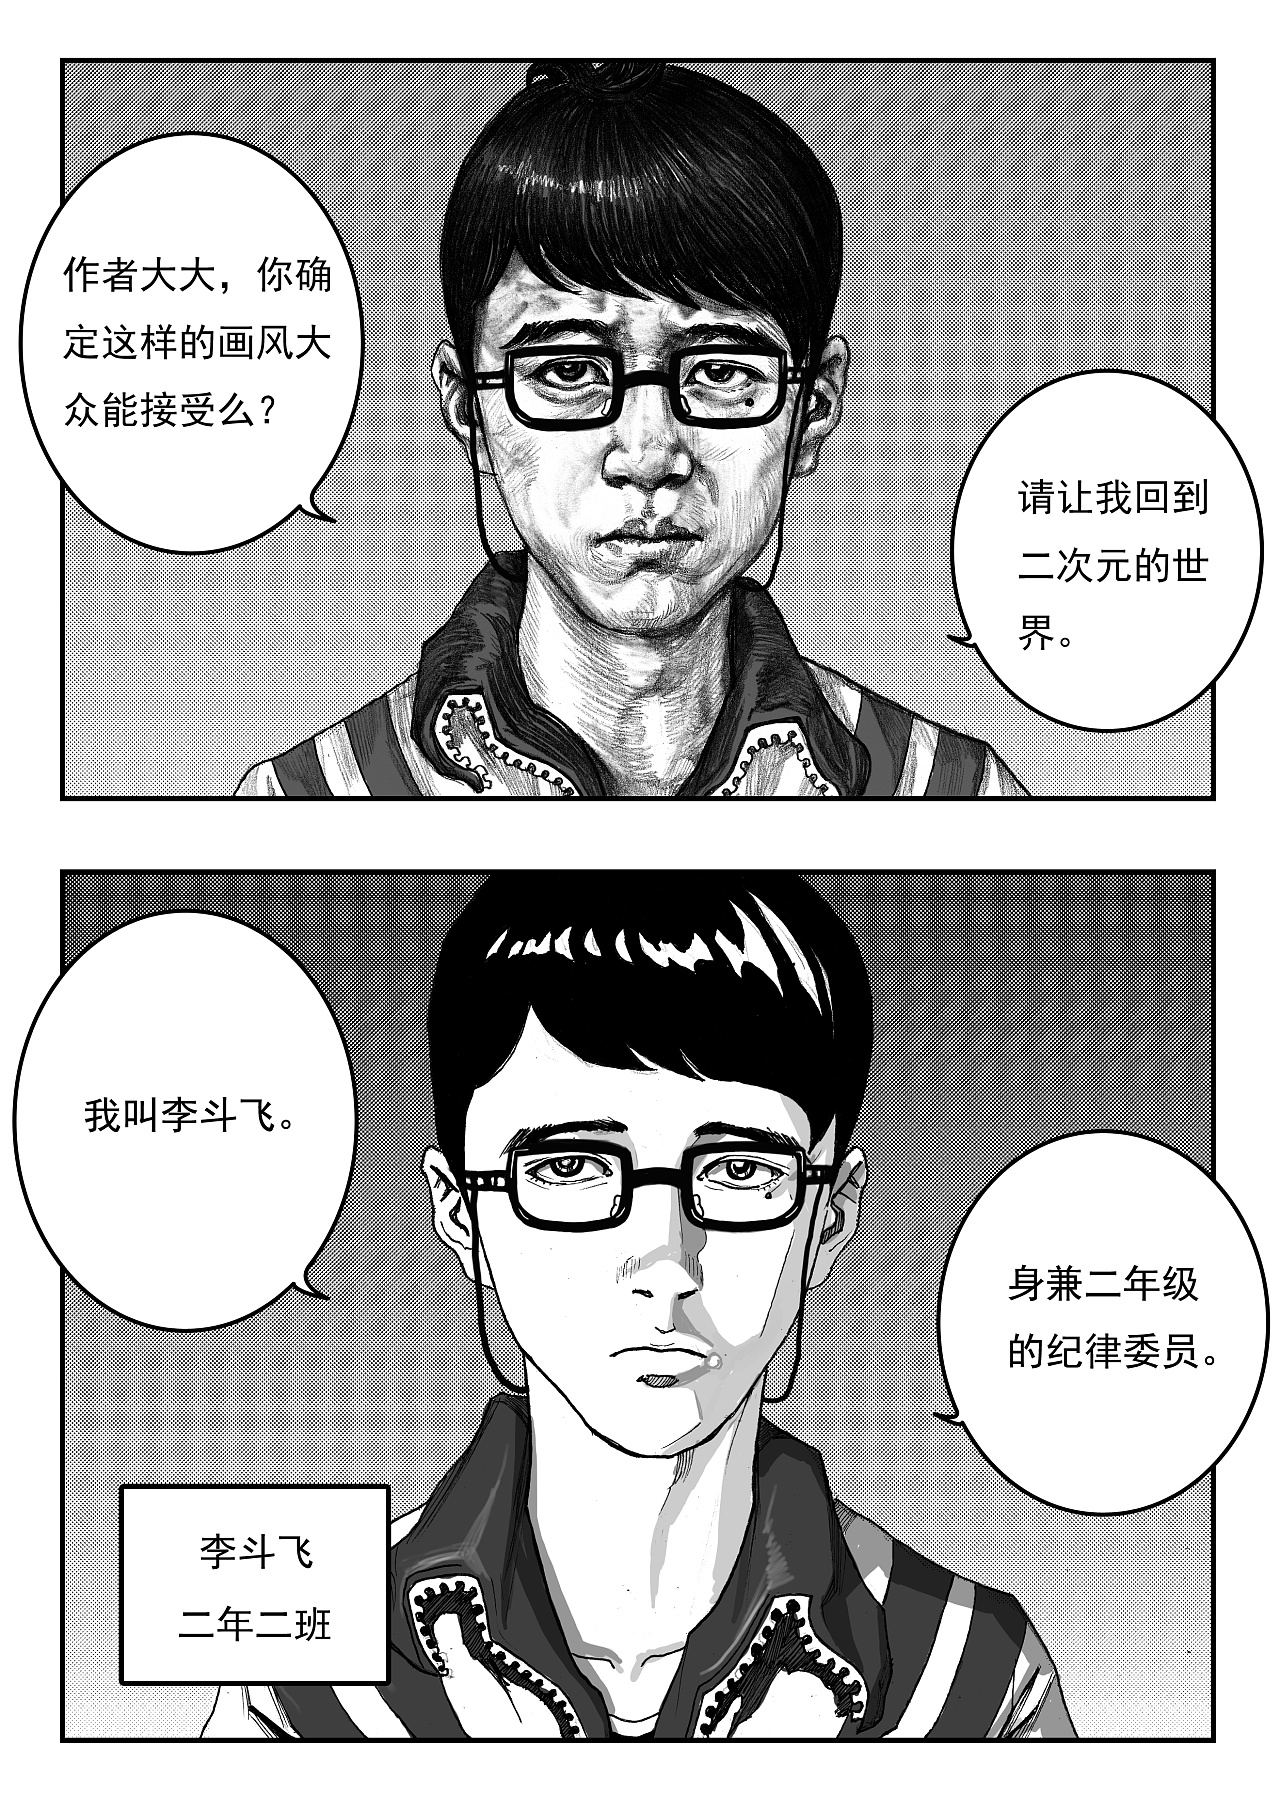 杀人漫画_电影海报_图集_电影网_1905.com